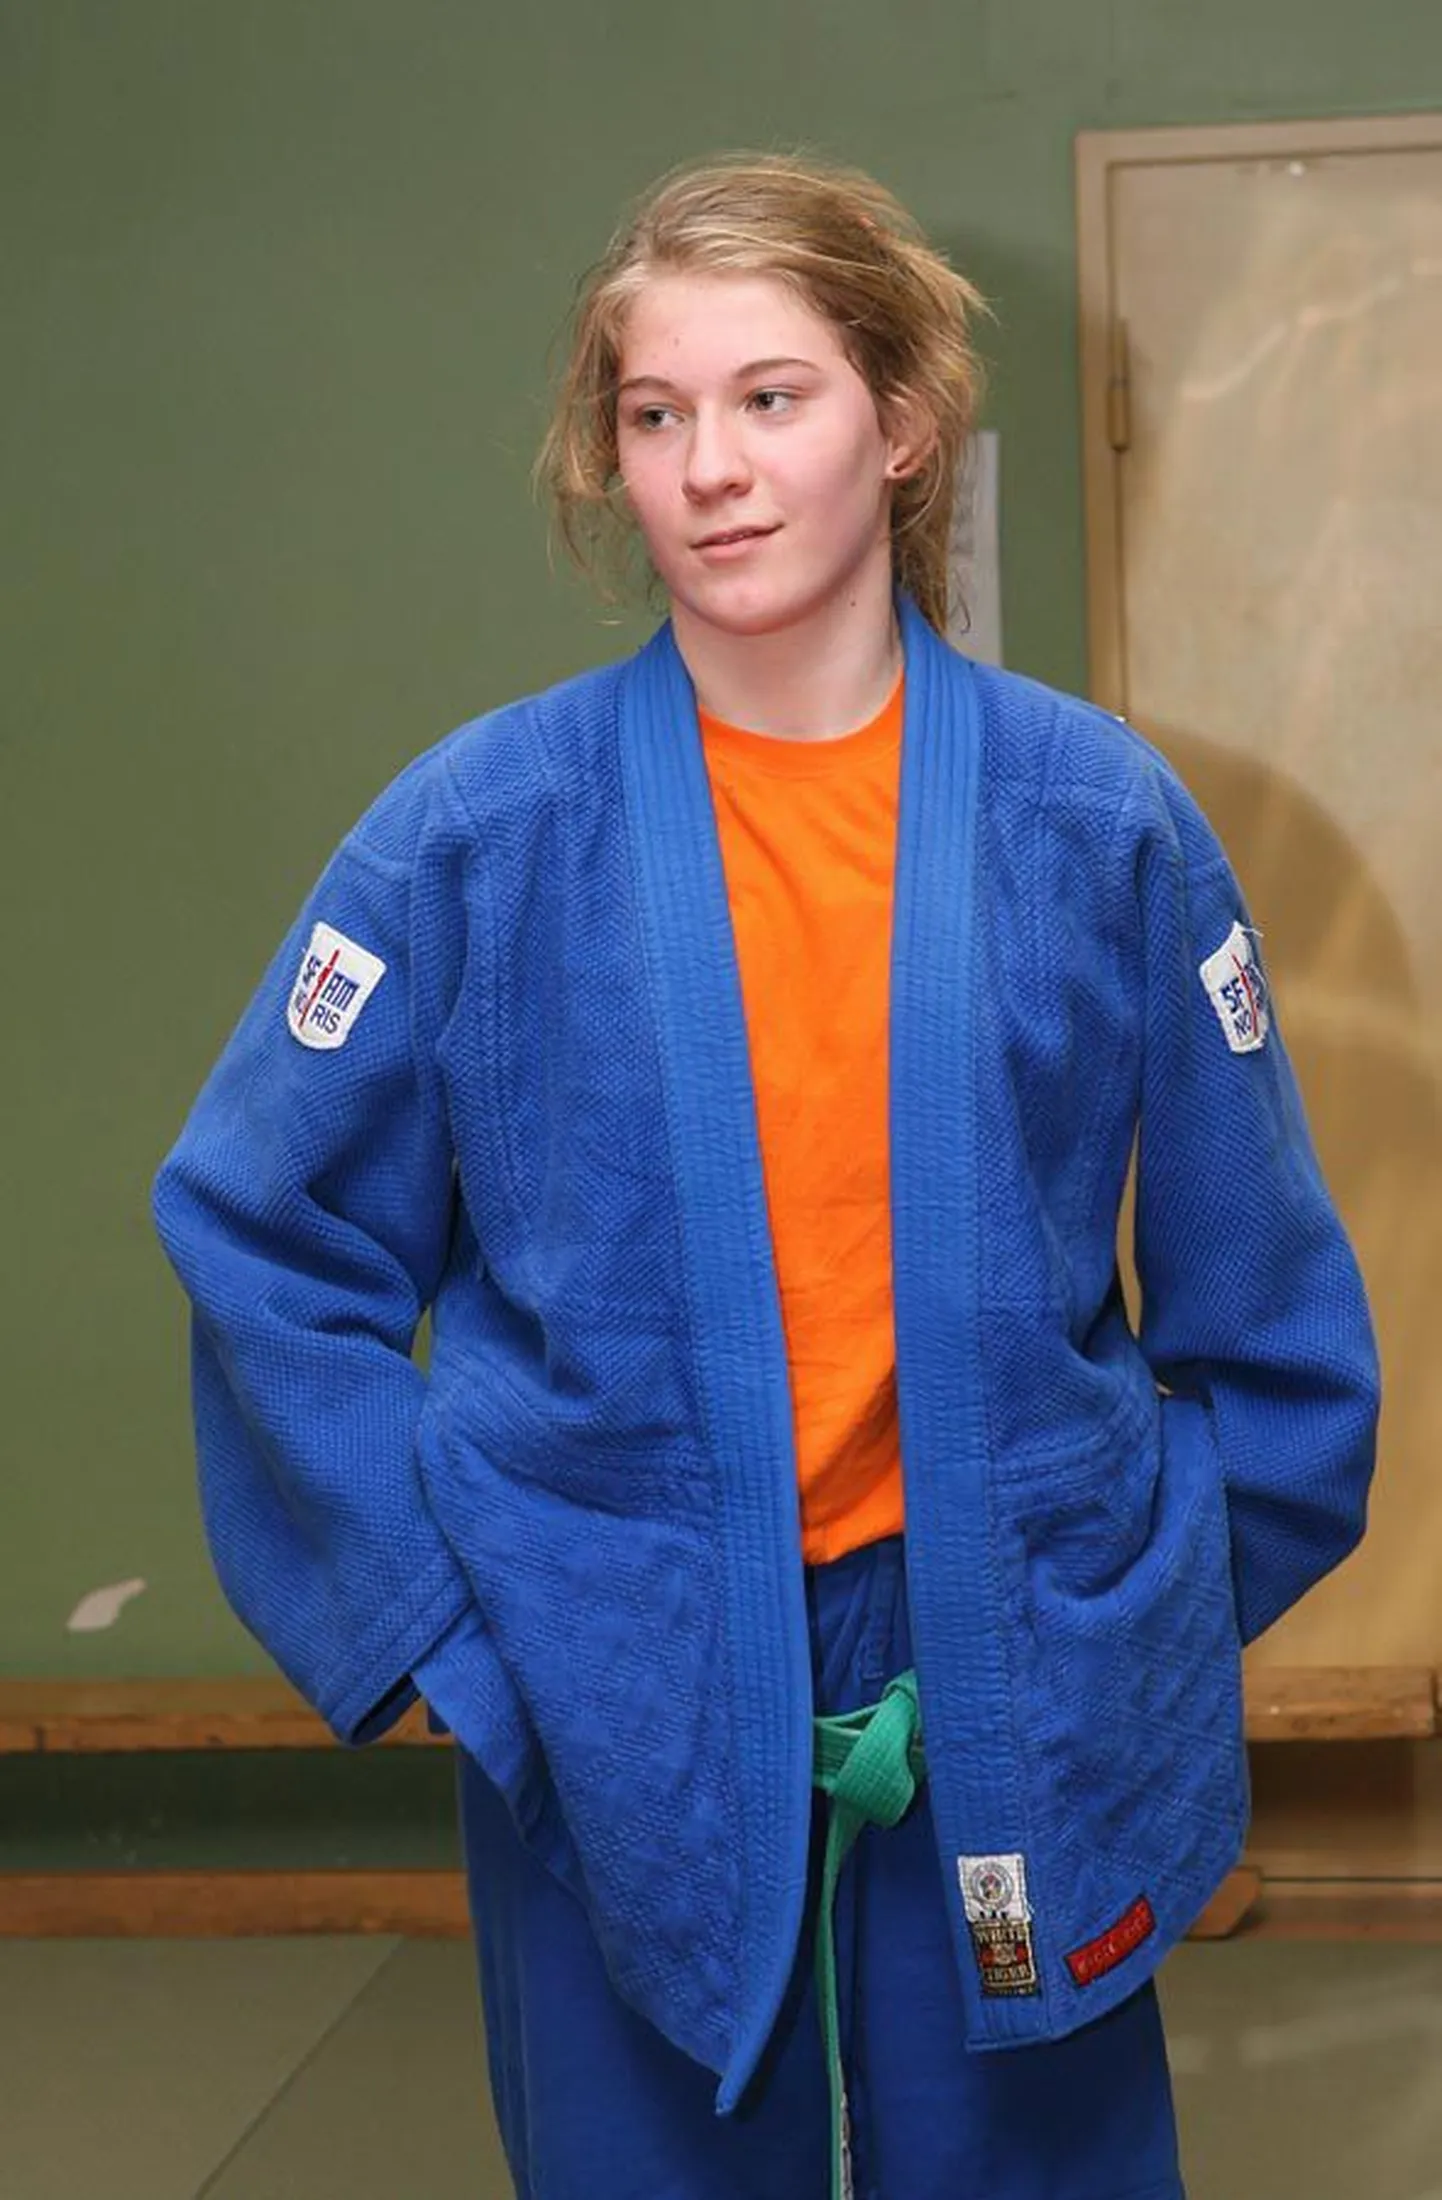 Judokate võistlusrohke nädalalõpp andis Kristel Naelsole kaks hõbedat ja pronksi. Nüüdsest on veel noorteklassi kuuluva sportlase kollektsioonis ka üks Eesti täiskasvanute absoluutkaalu medal.